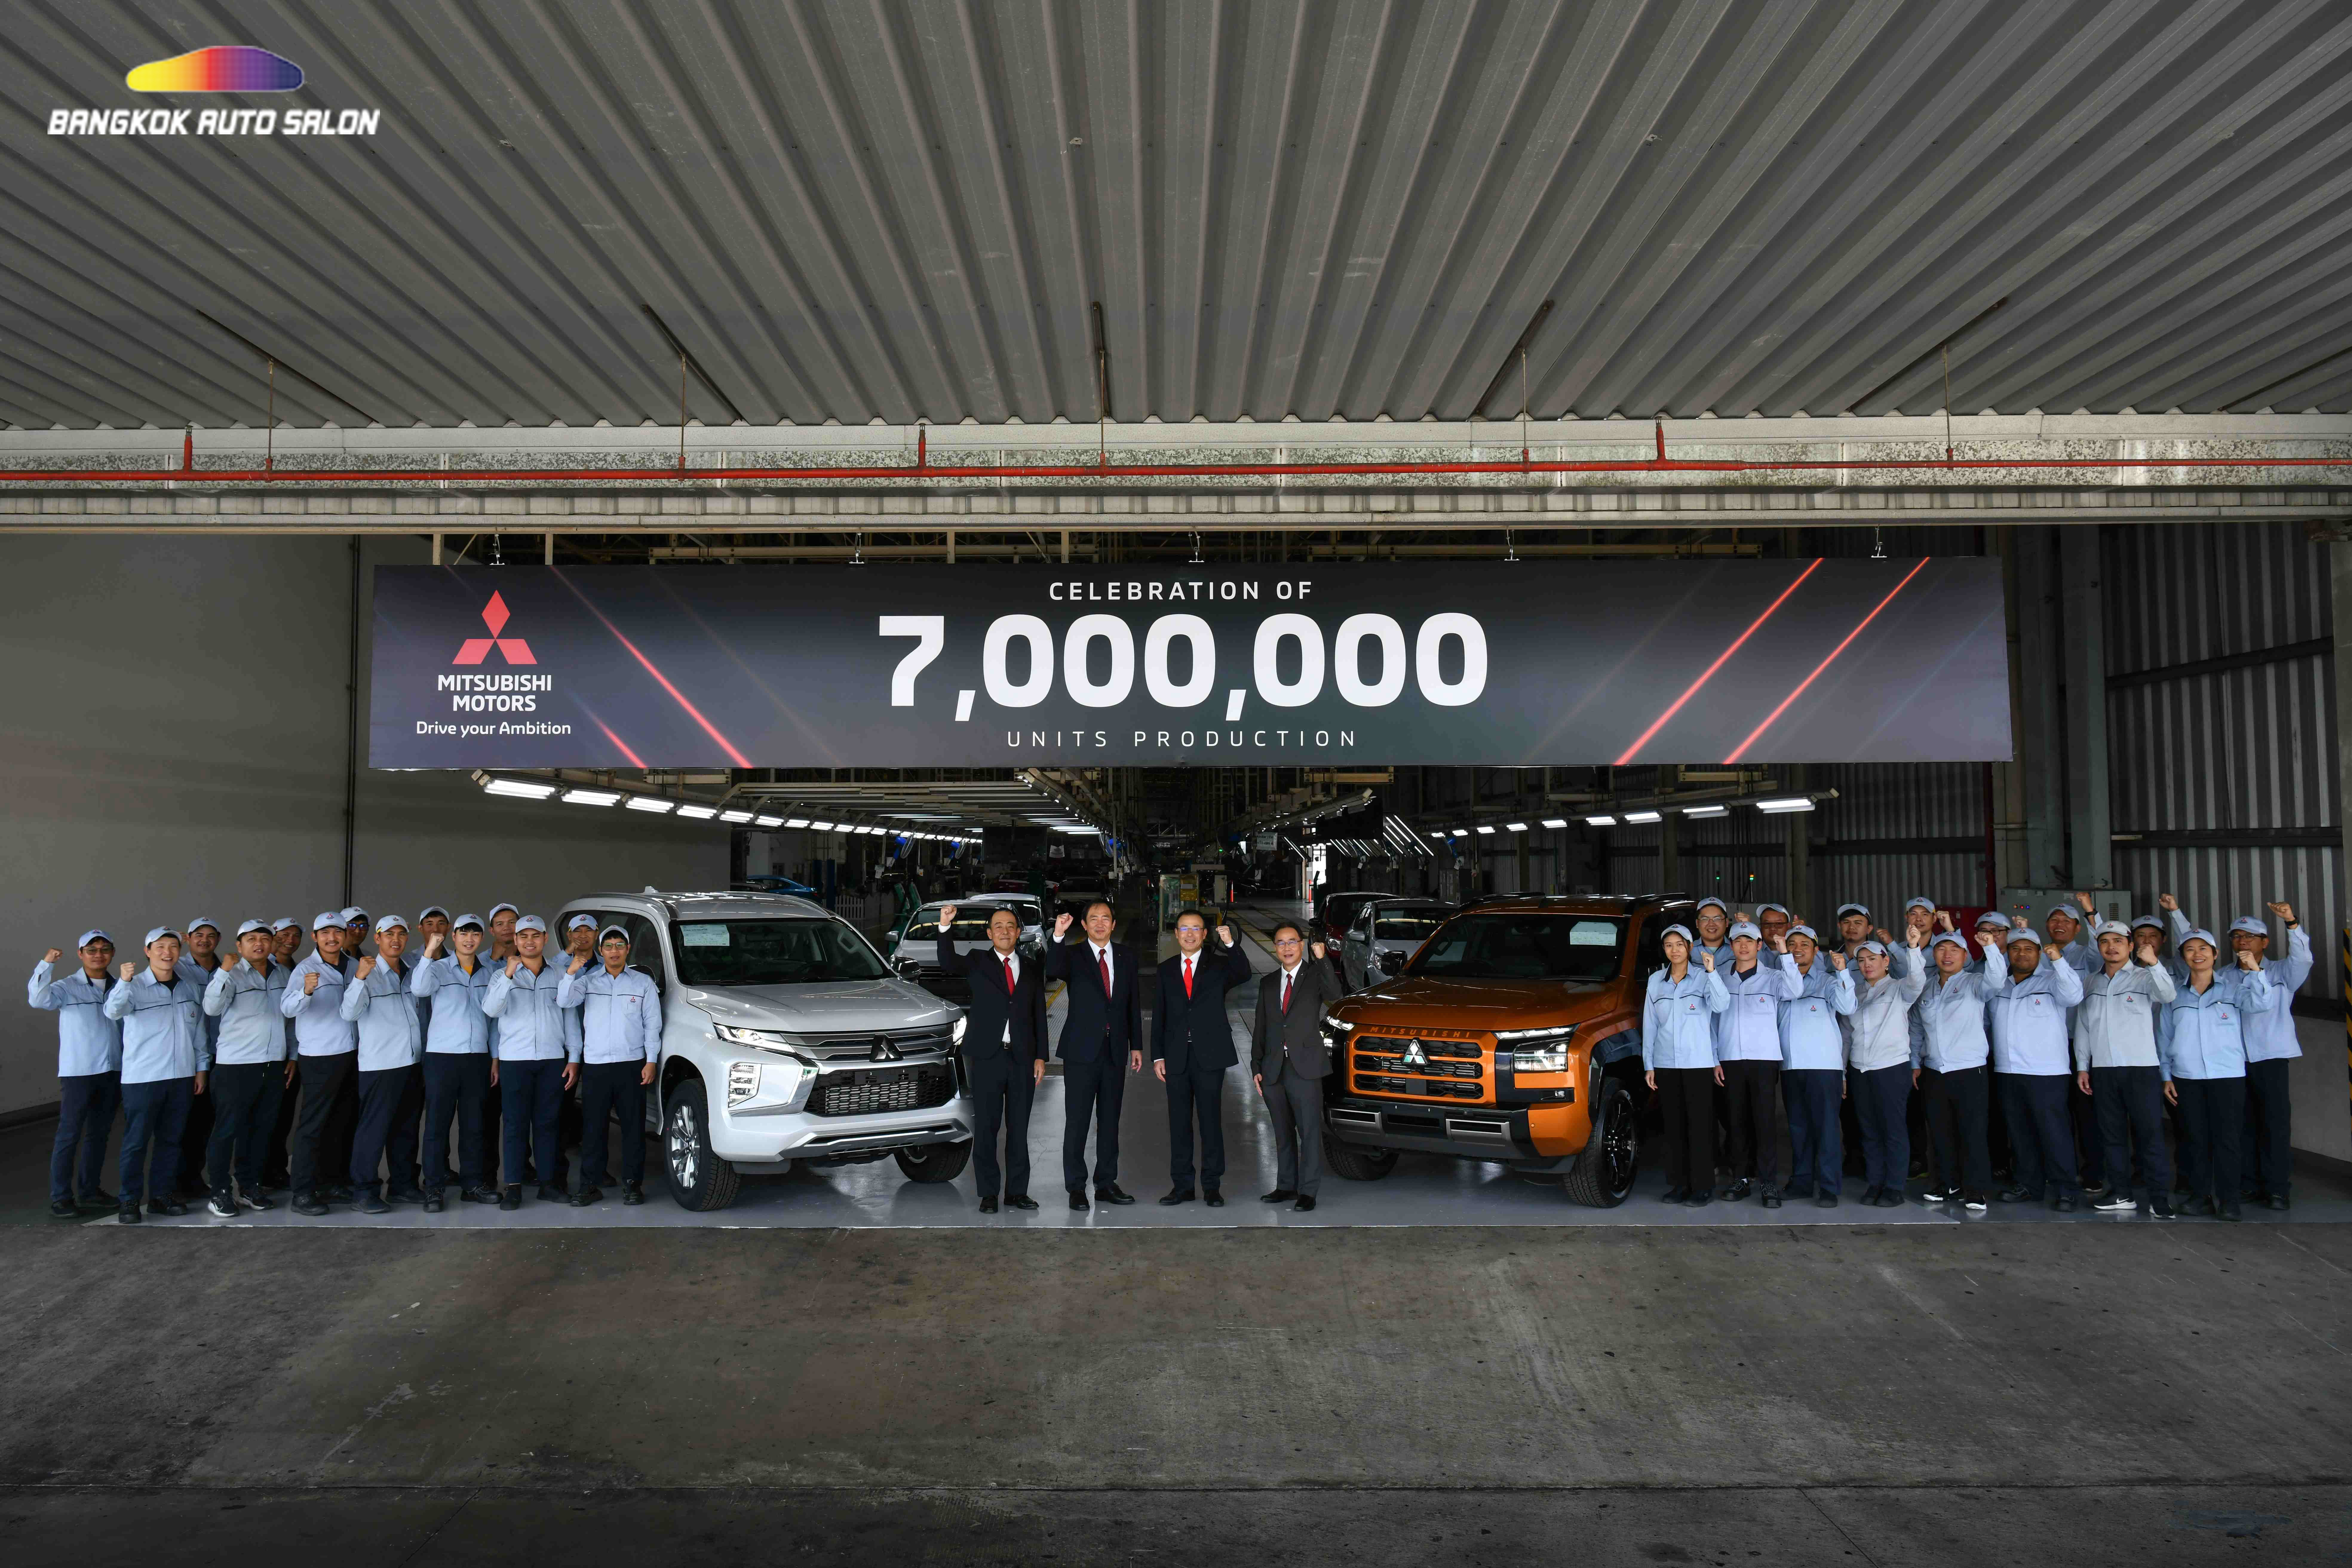 มิตซูบิชิ มอเตอร์ส ประเทศไทย เฉลิมฉลองการผลิตรถยนต์ครบ 7 ล้านคัน มุ่งสู่ความเป็นผู้นำด้านนวัตกรรมยานยนต์